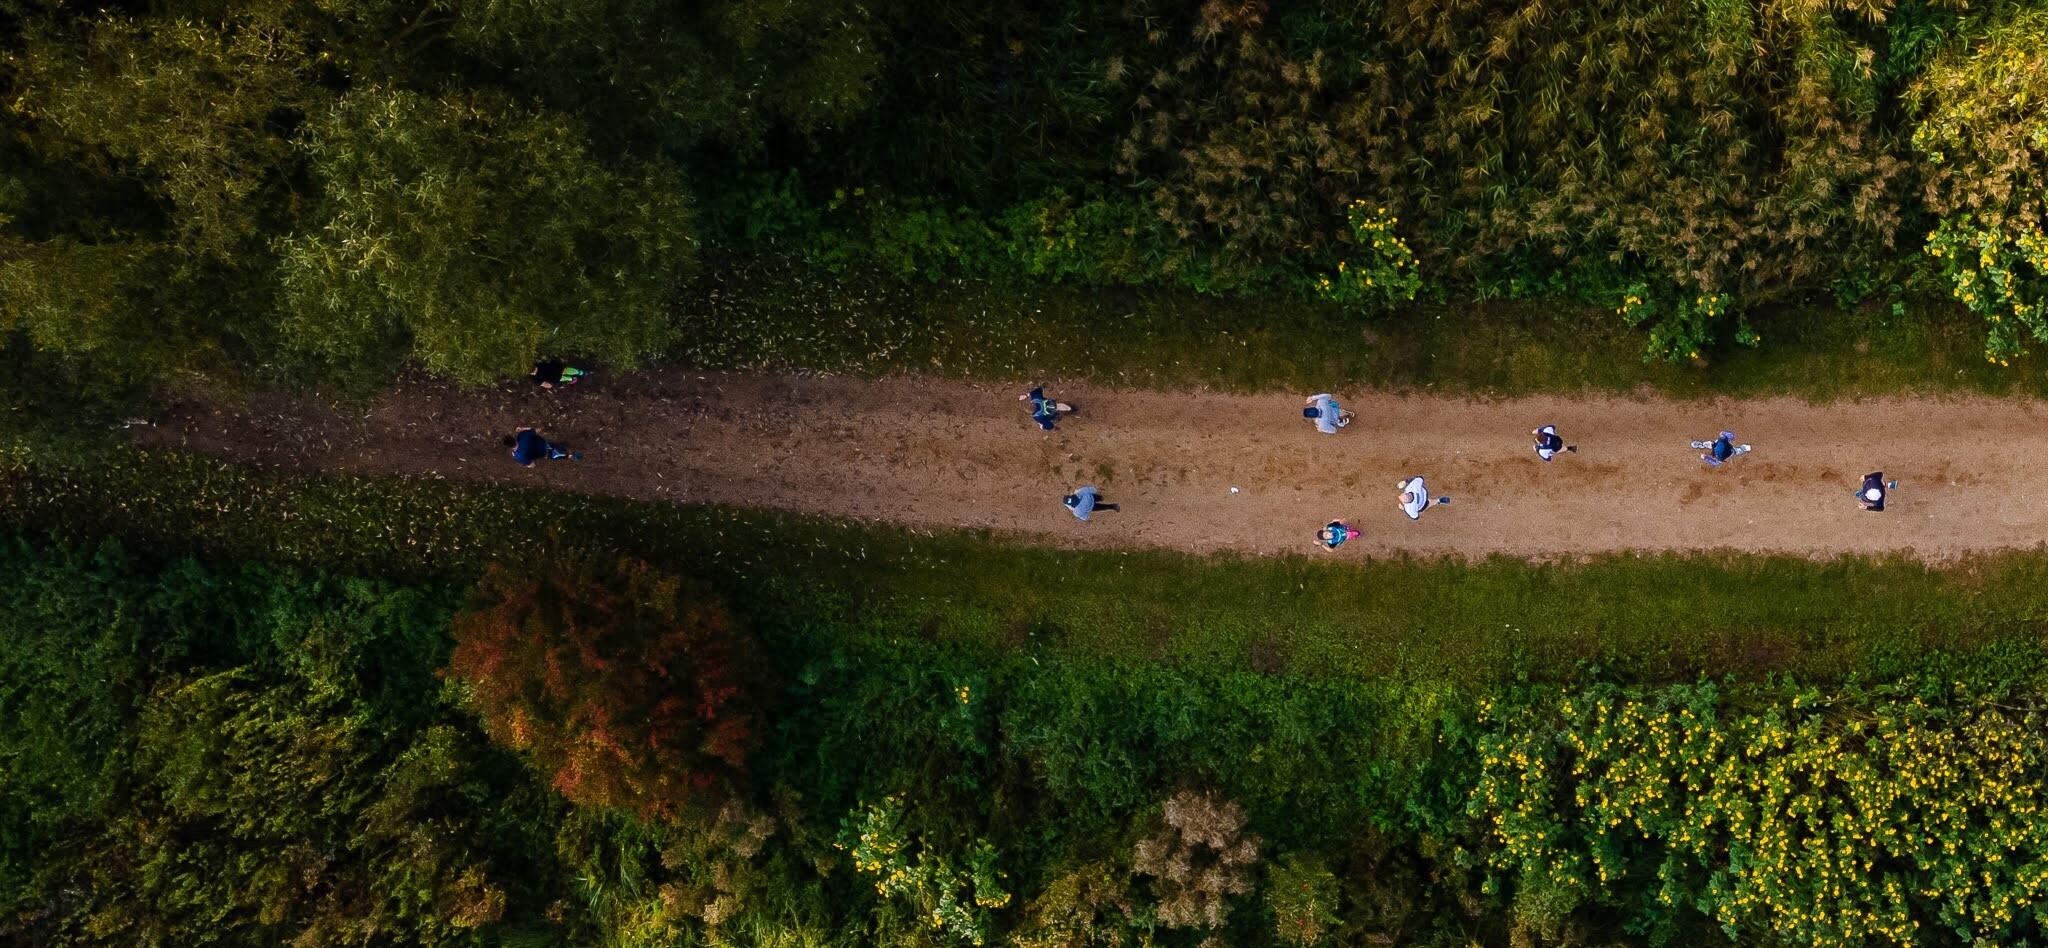 biegacze na leśnej ścieżce, zdjęcie zrobione dronem